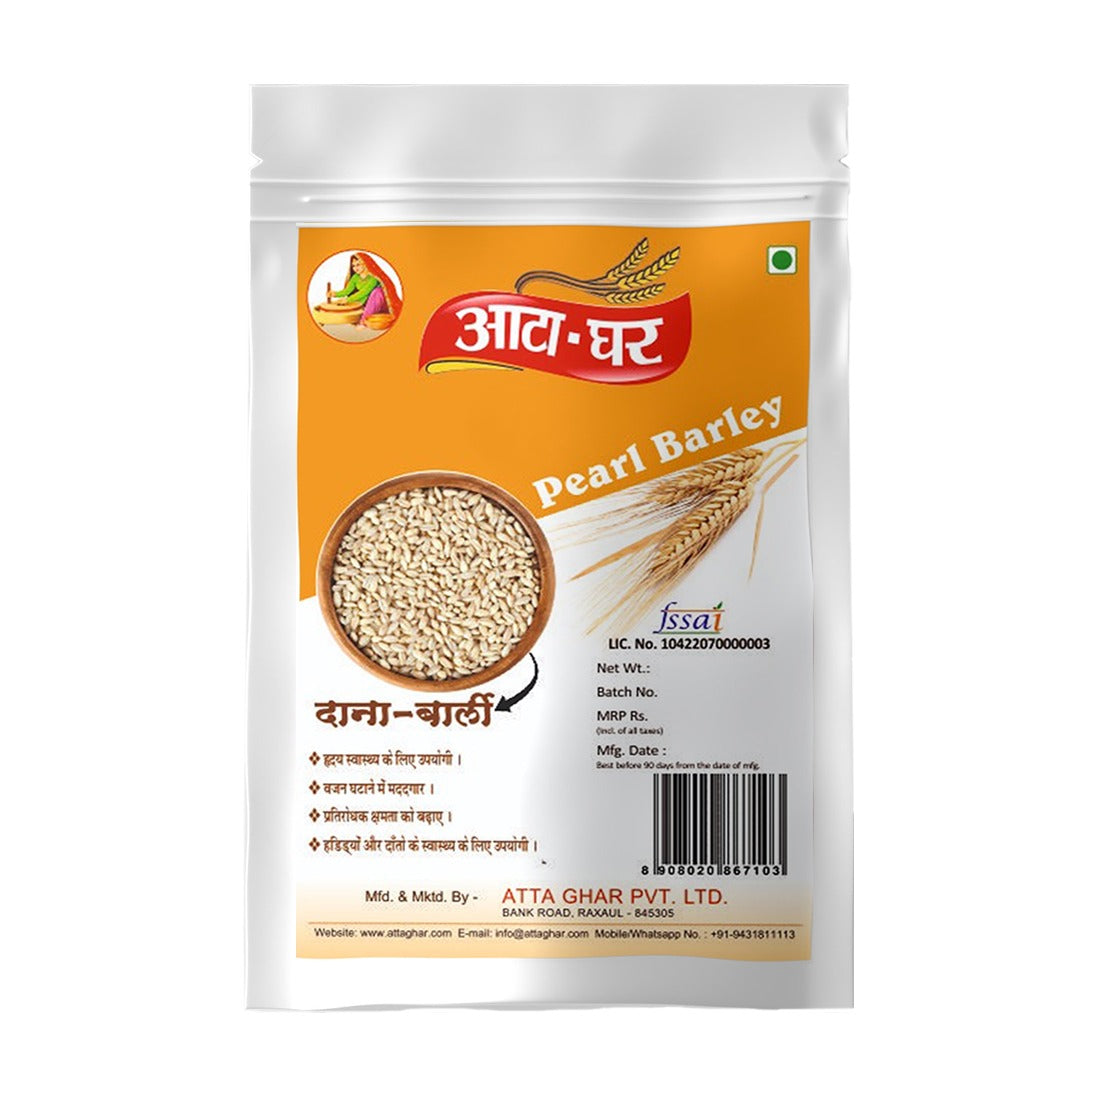 Atta-Ghar Pearl Barley, 2 kg - Pack of 4 * 500 grams